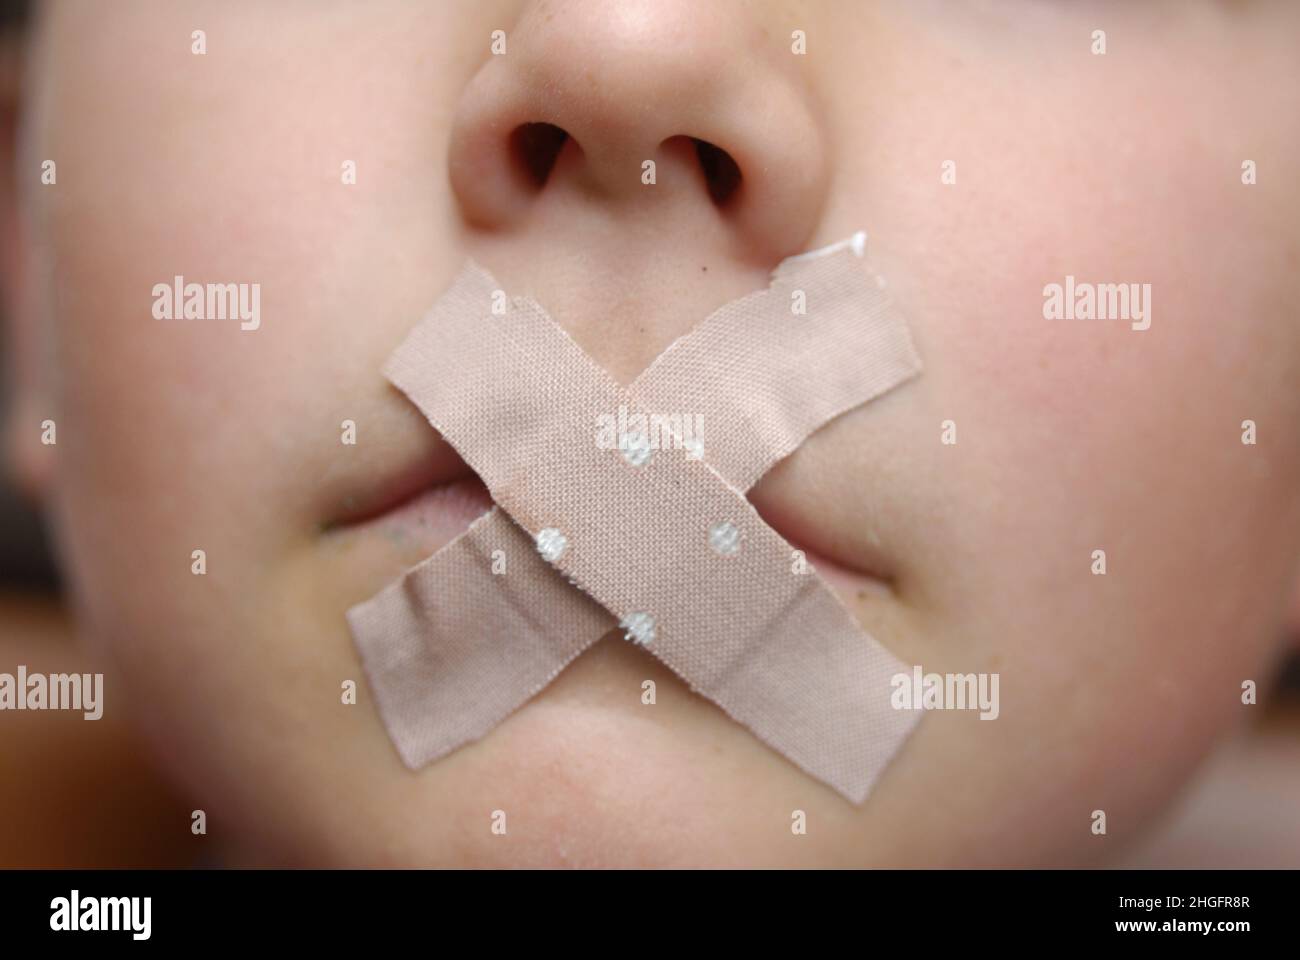 Детям заклеивают рот. Ребёнок с заклееннцм ртом. Рот заклеен пластырем. Пластырь на рот. Скотч для заклеивания рта.